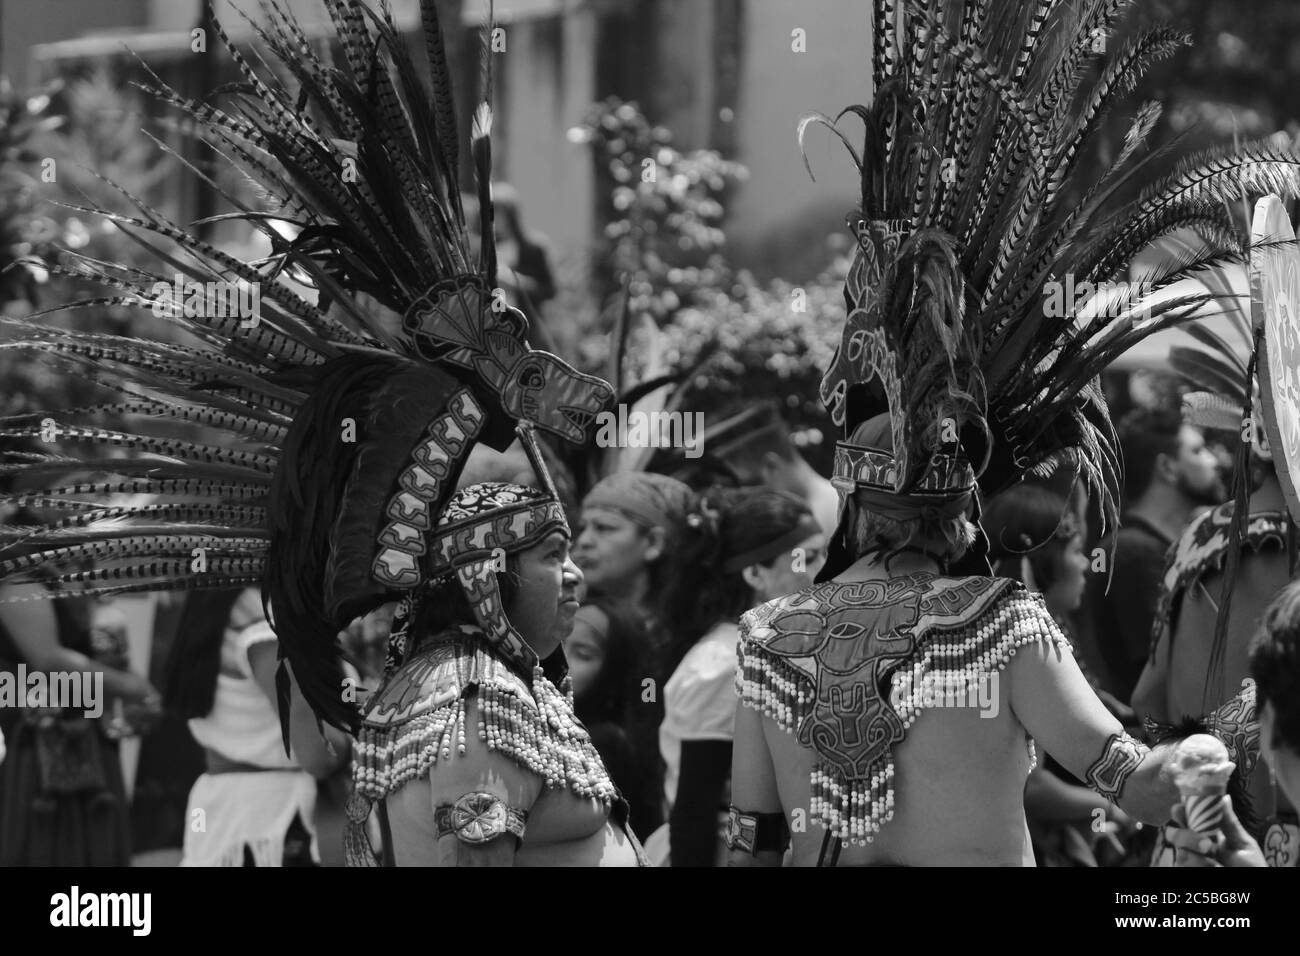 MEXICO, MEXIQUE - septembre / 22 / 2018 hommes autochtones habillés comme guerriers aztèques Banque D'Images